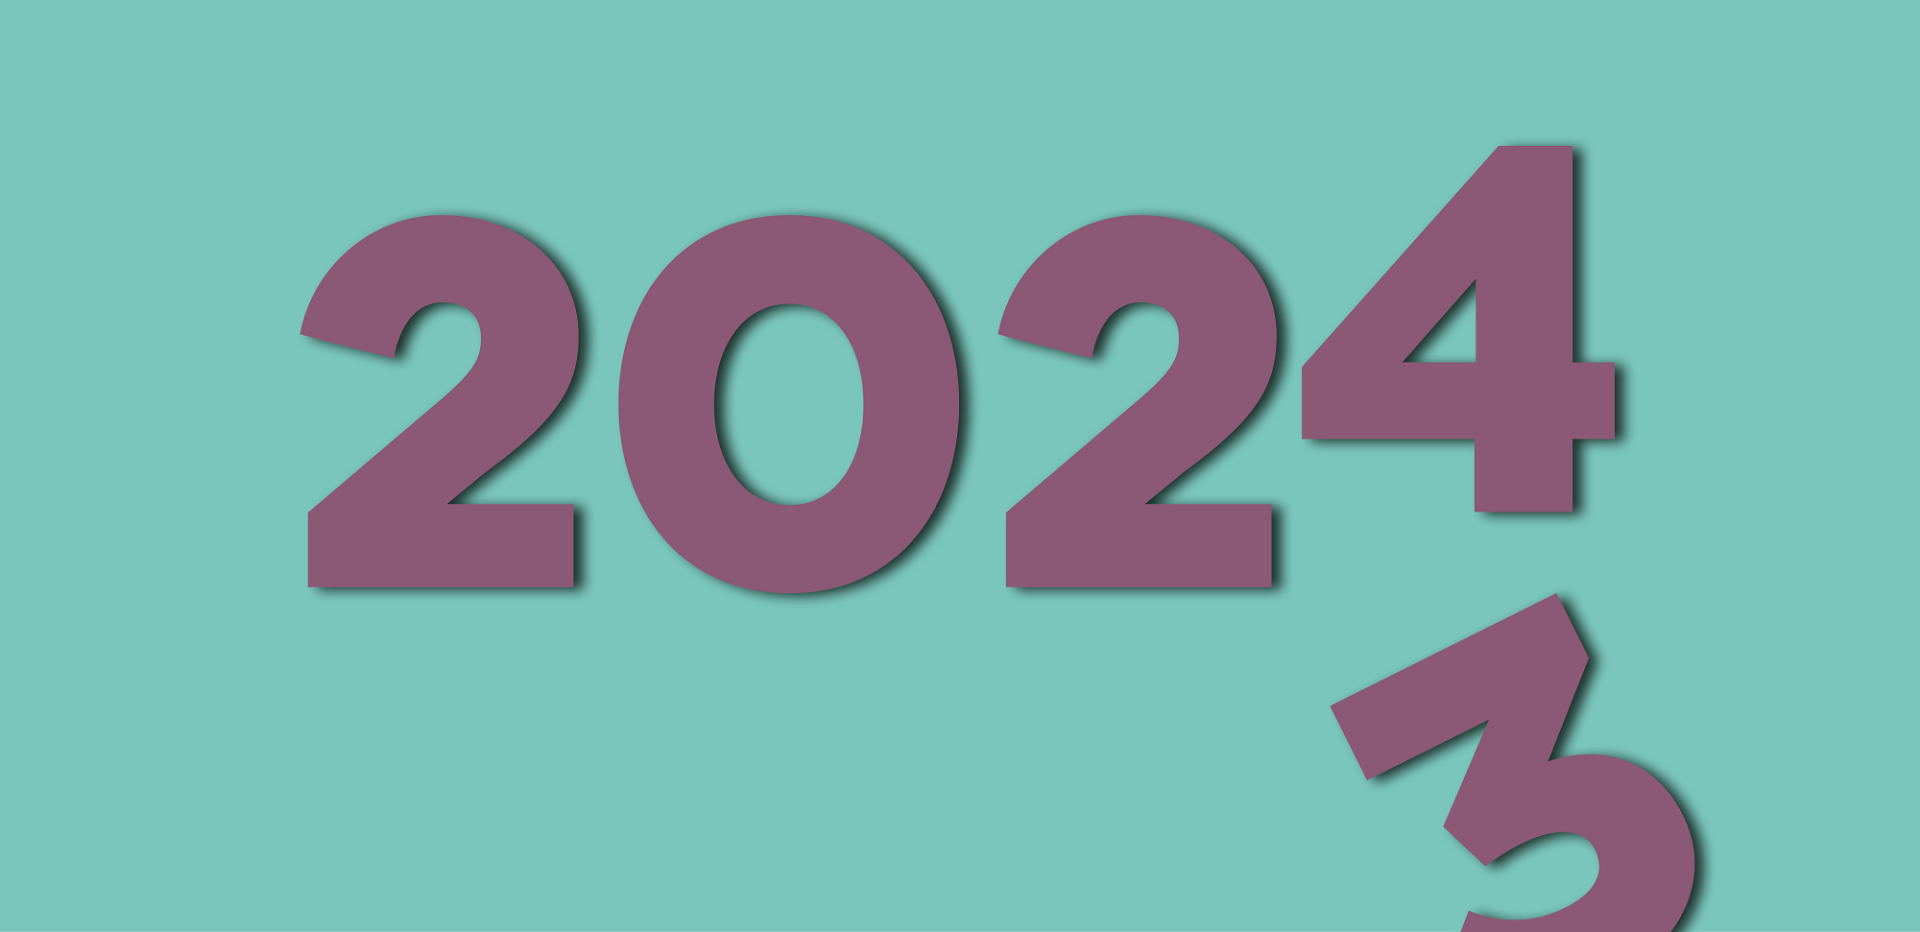 Billede hvor årstallet 2024 ses og herunder glider et 3-tal ud af billedet. Dermed menes at vi er på vej ind i år 2024. 